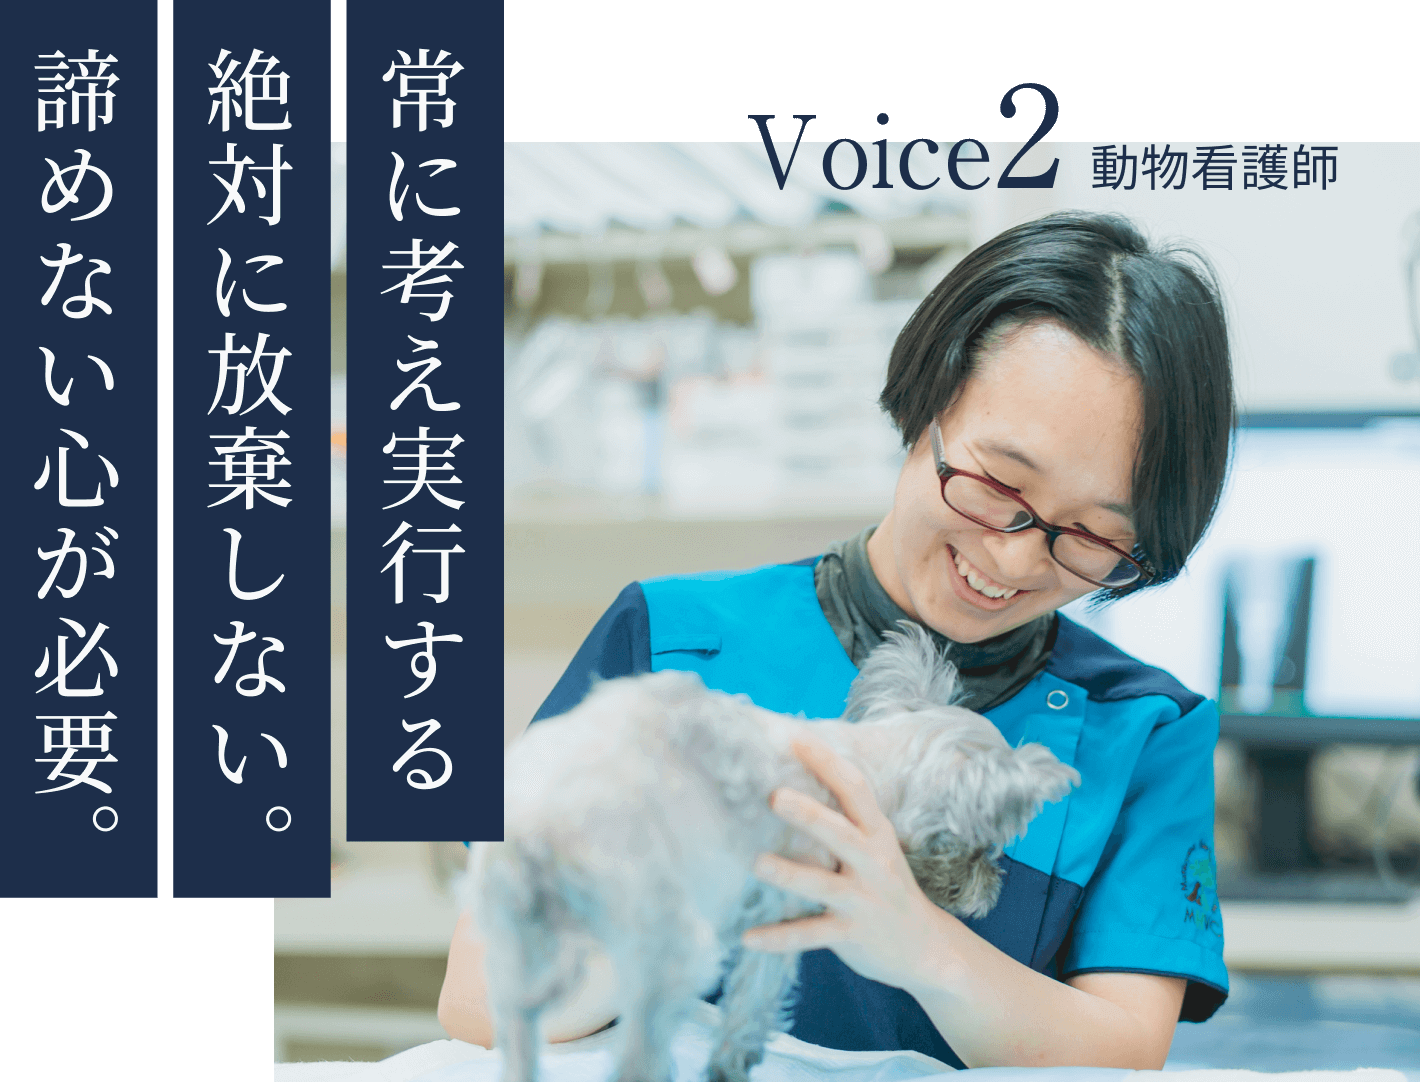 Voice2 動物看護師 常に考え実行する絶対に放棄しない。諦めない心が必要。